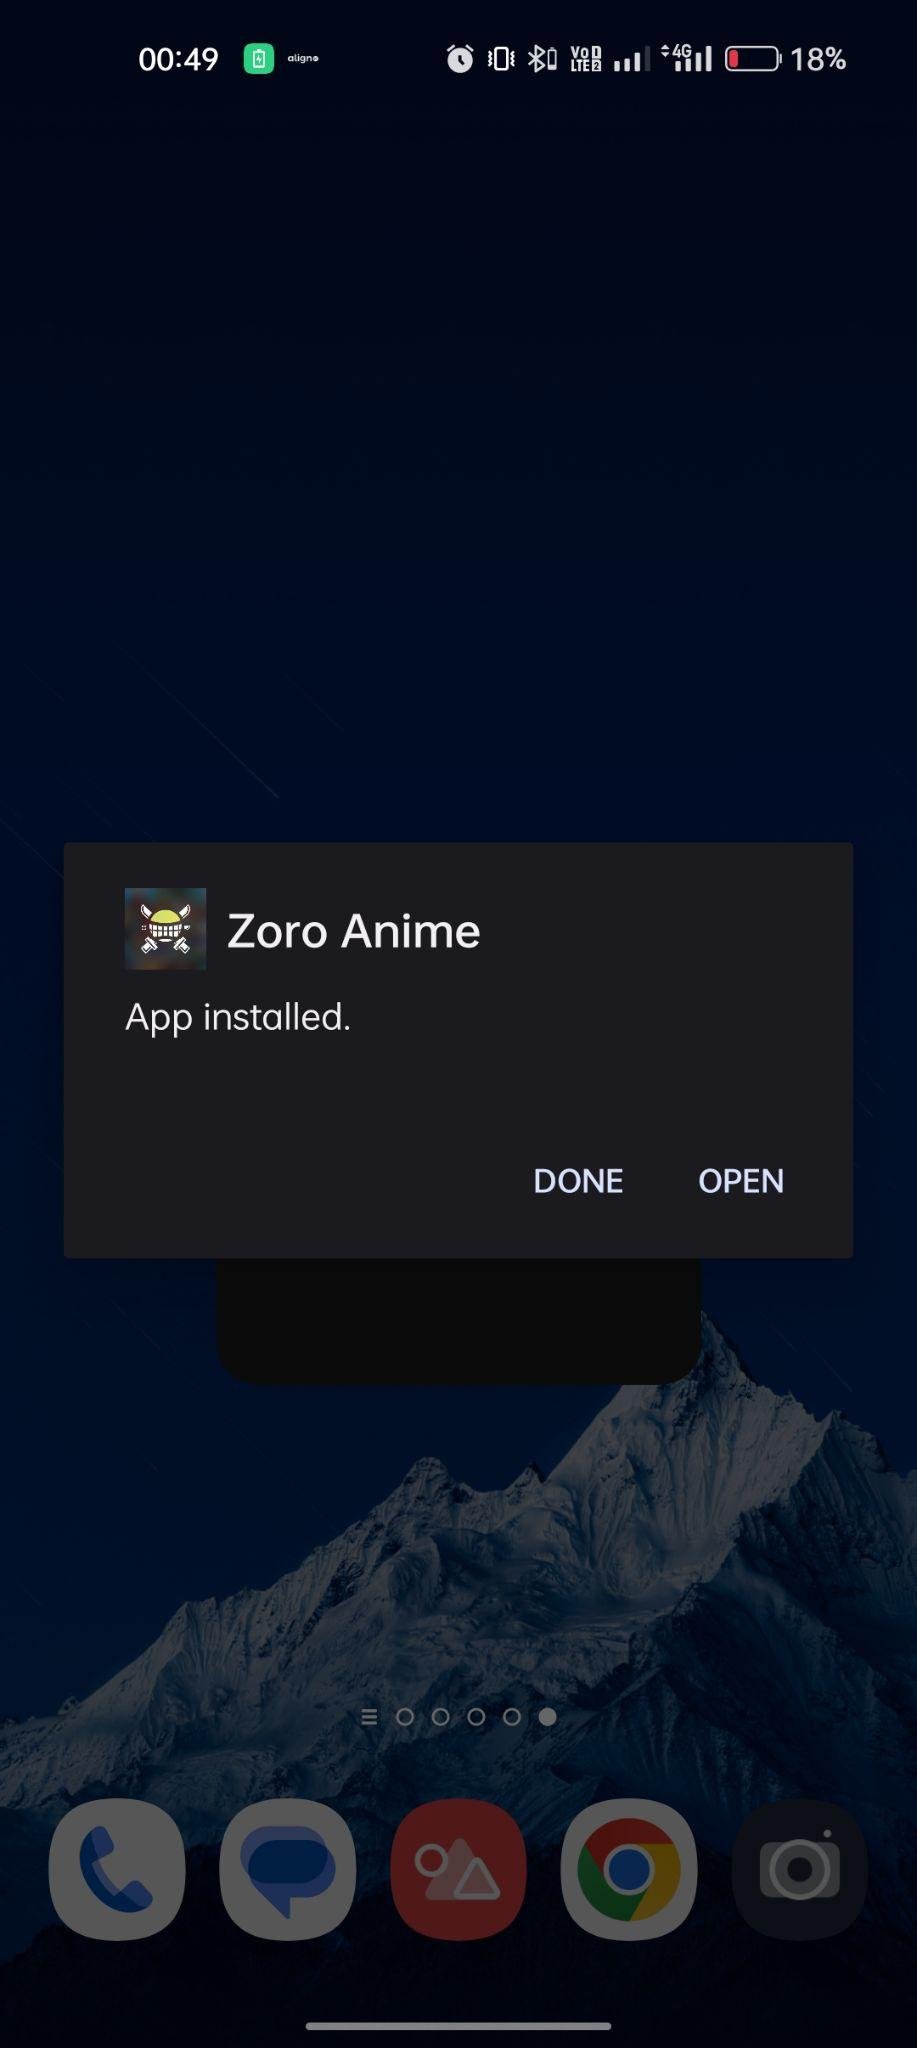 Zoro.to apk installed